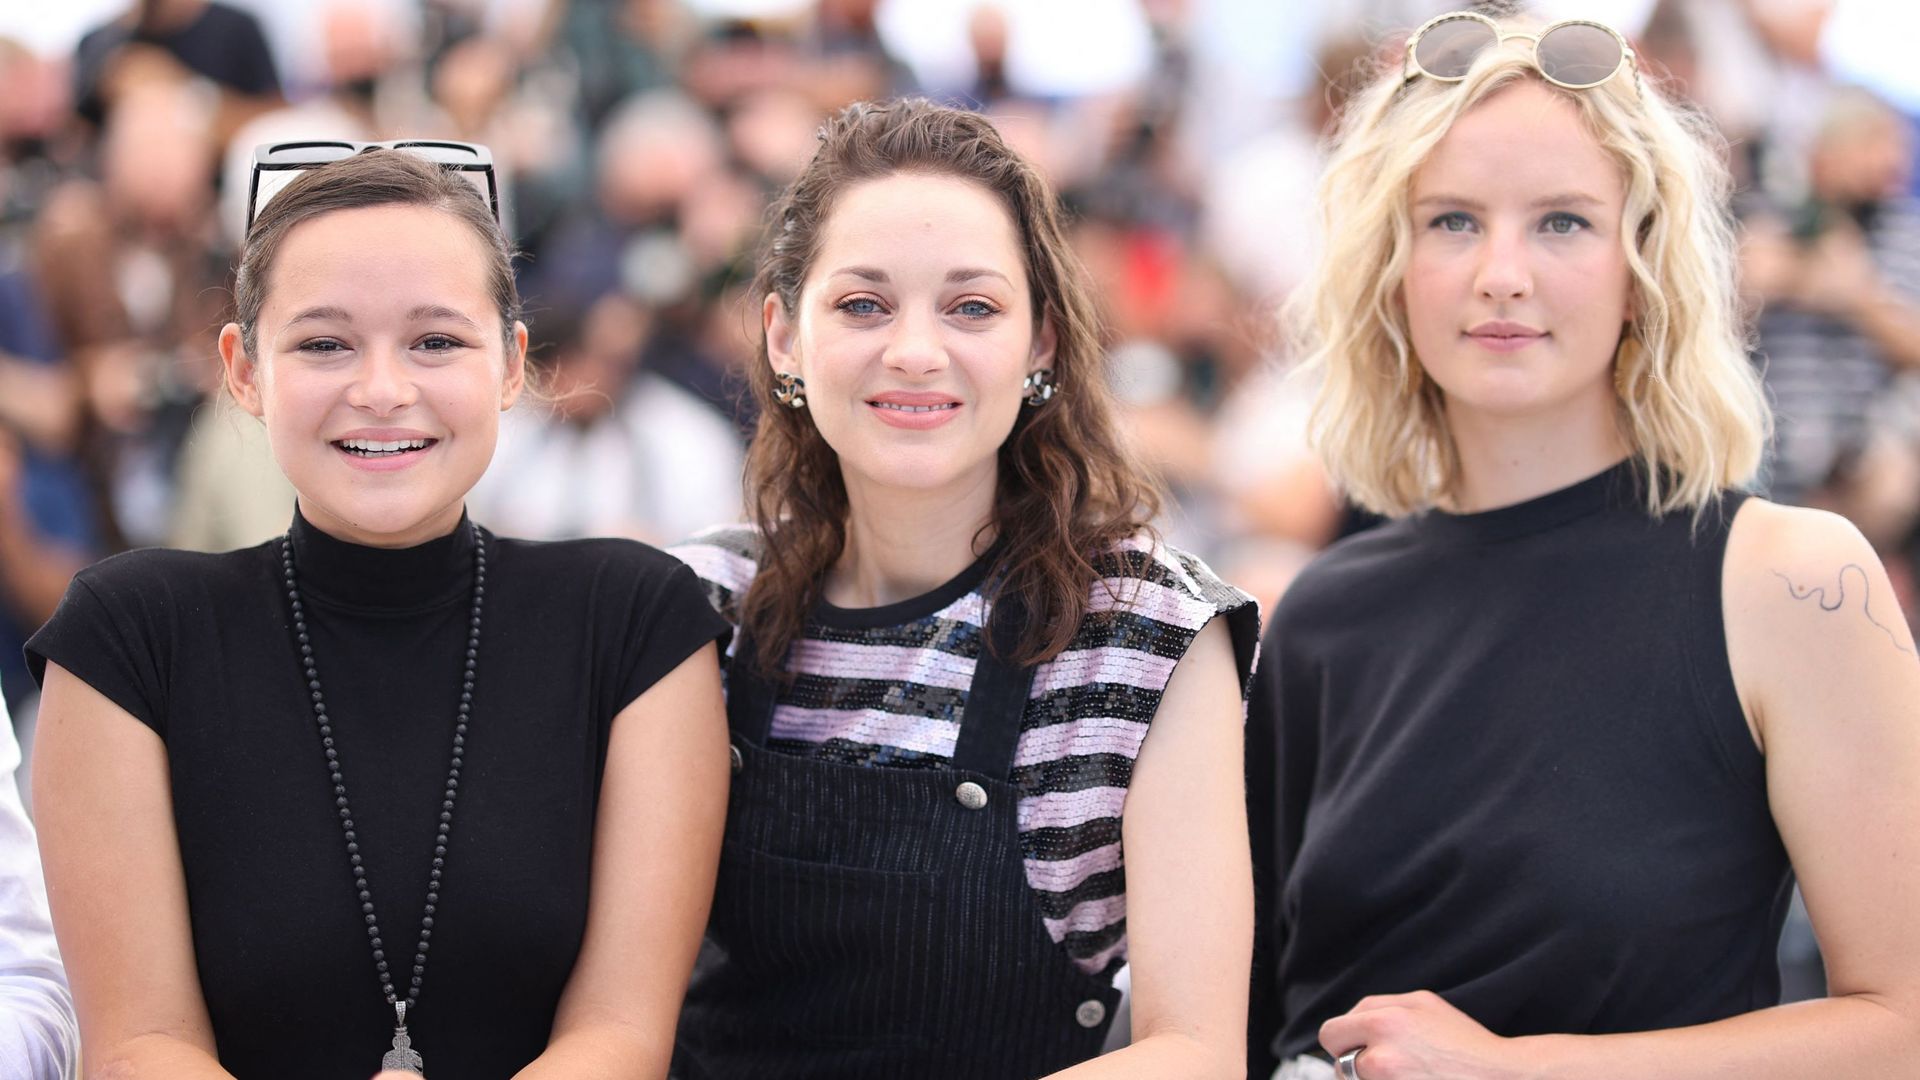 Melati Wijsen était à Cannes en 2021 pour la présentation du film "Bigger Than Us" coproduit par Marion Cotillard